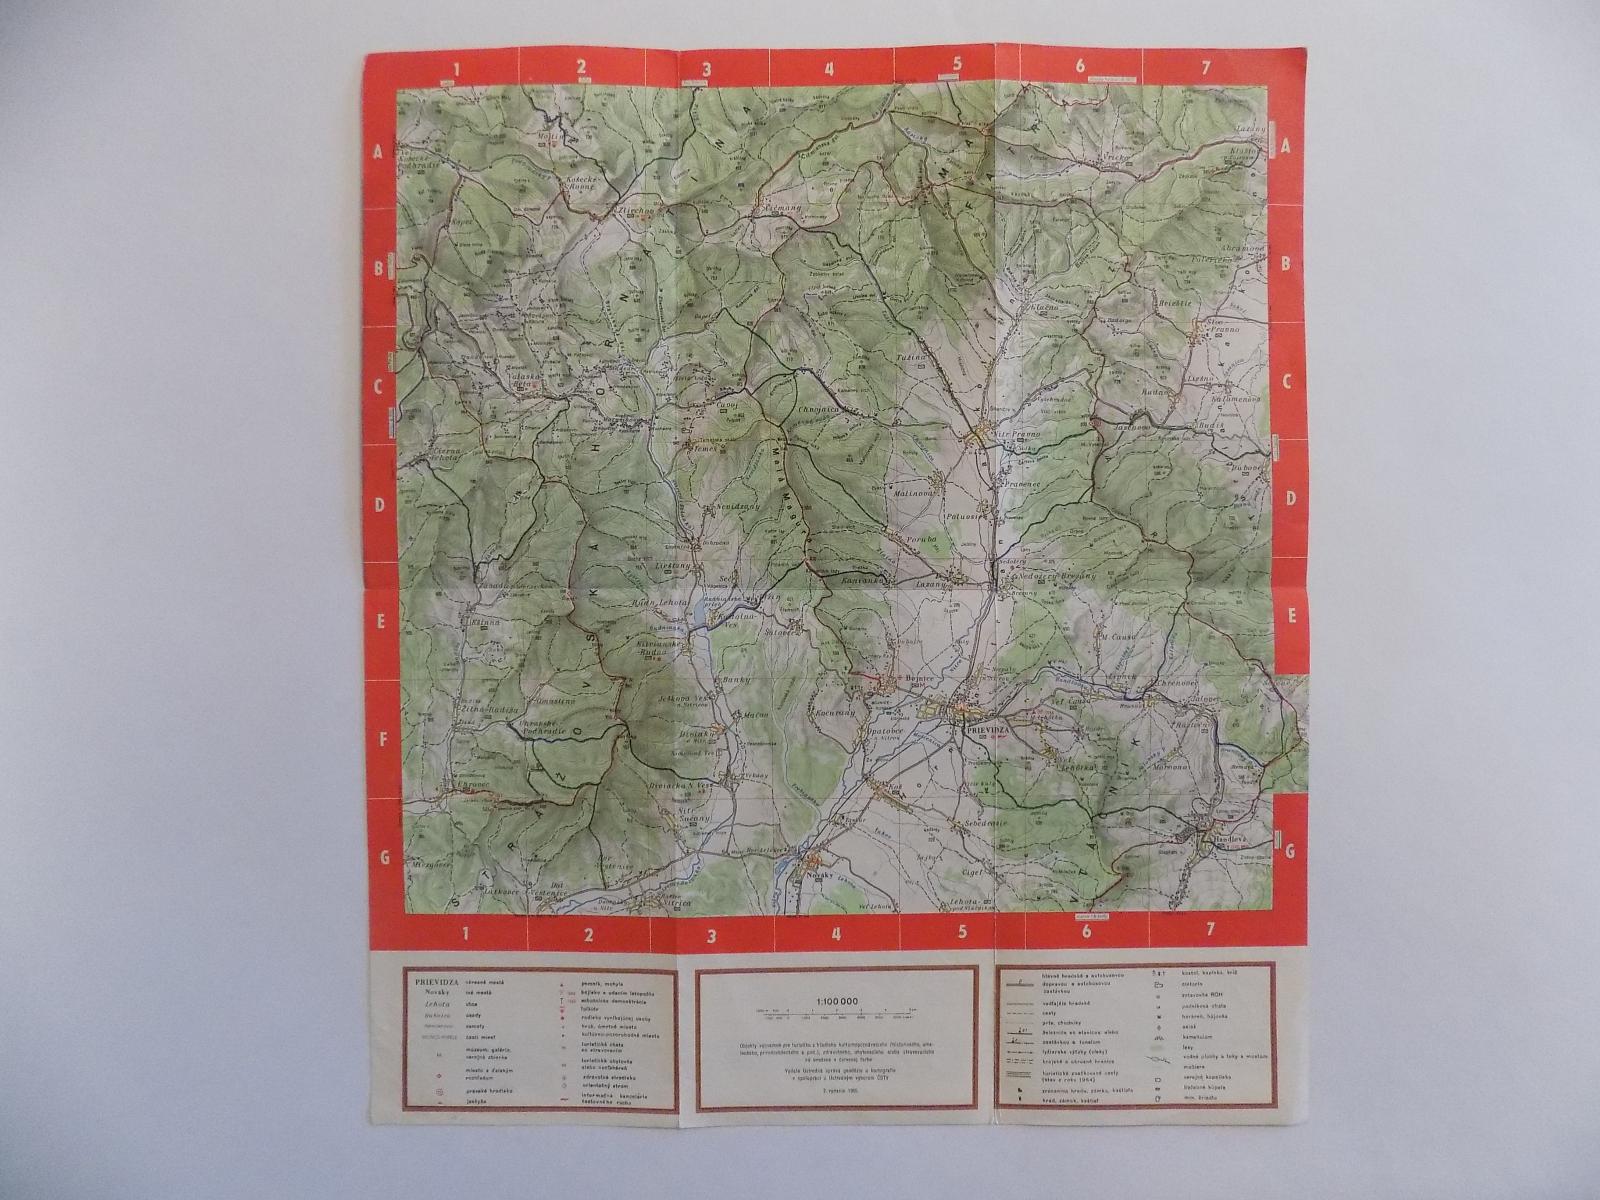 STARÁ MAPA Č.4- SLOVENSKO - HORNÉ PONITRIE,39 X 44 CM,1961 - Mapy a veduty Evropa